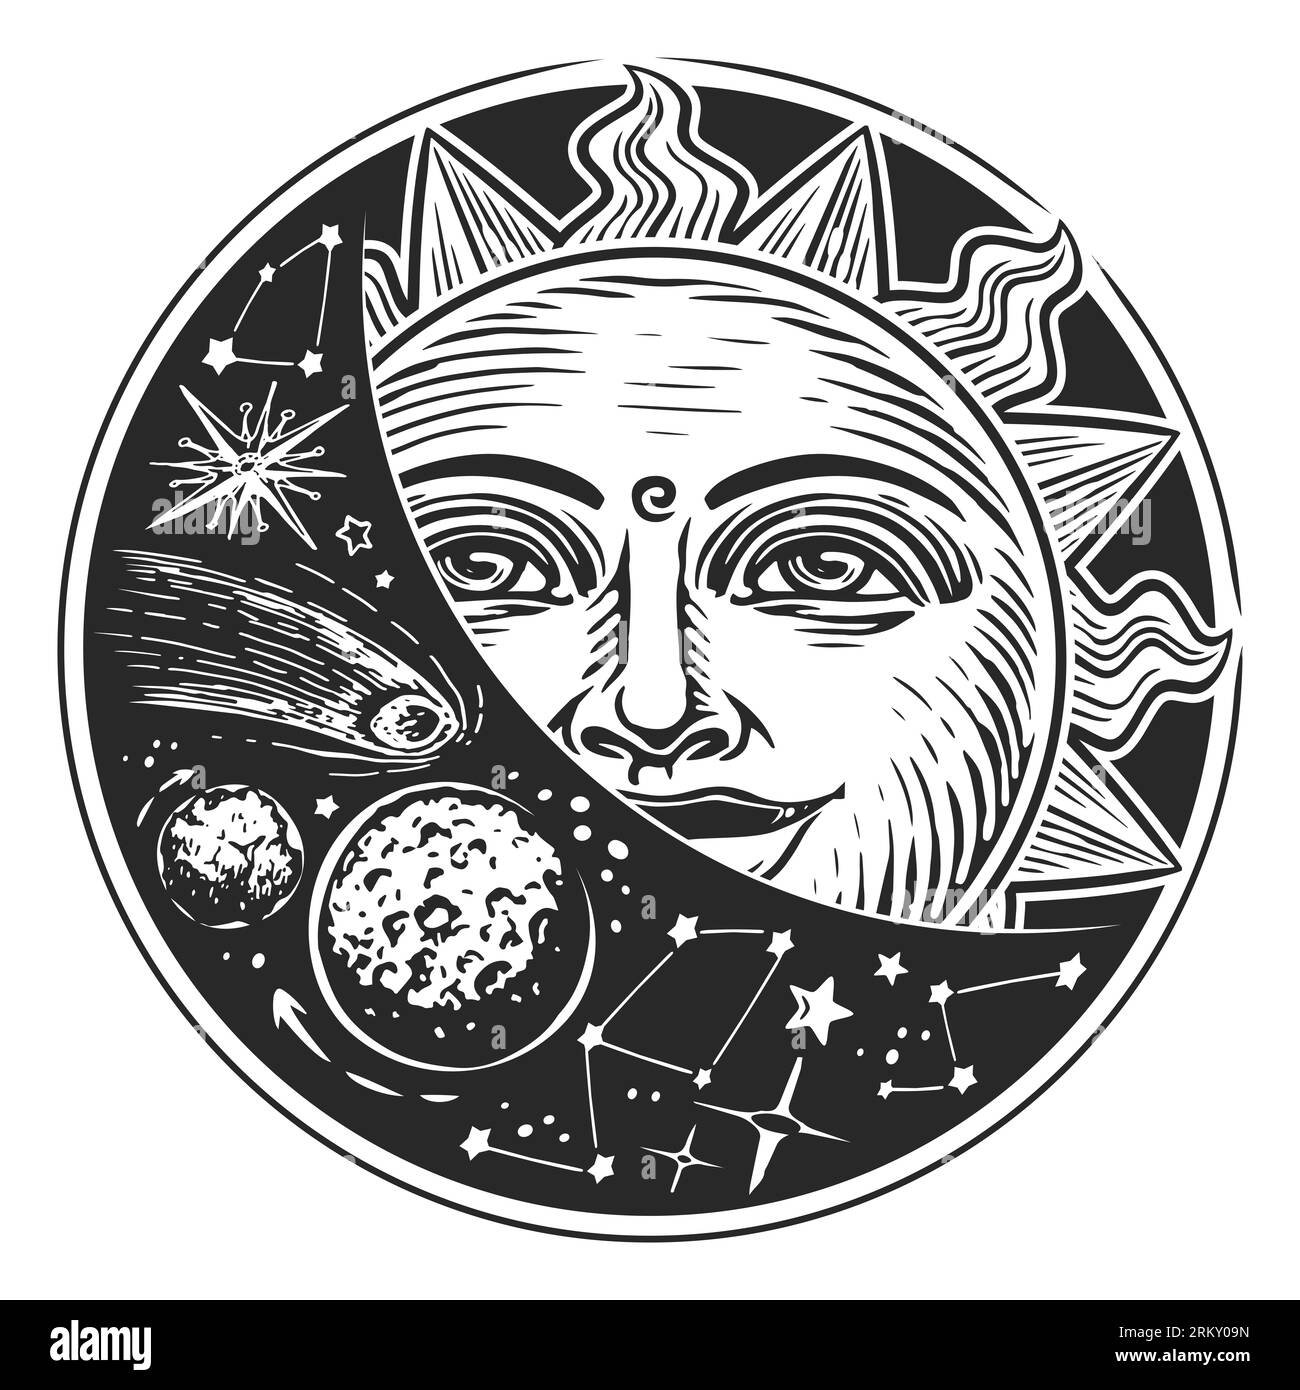 Sole e stelle nello spazio. Concetto di astrologia. illustrazione in stile vintage Foto Stock